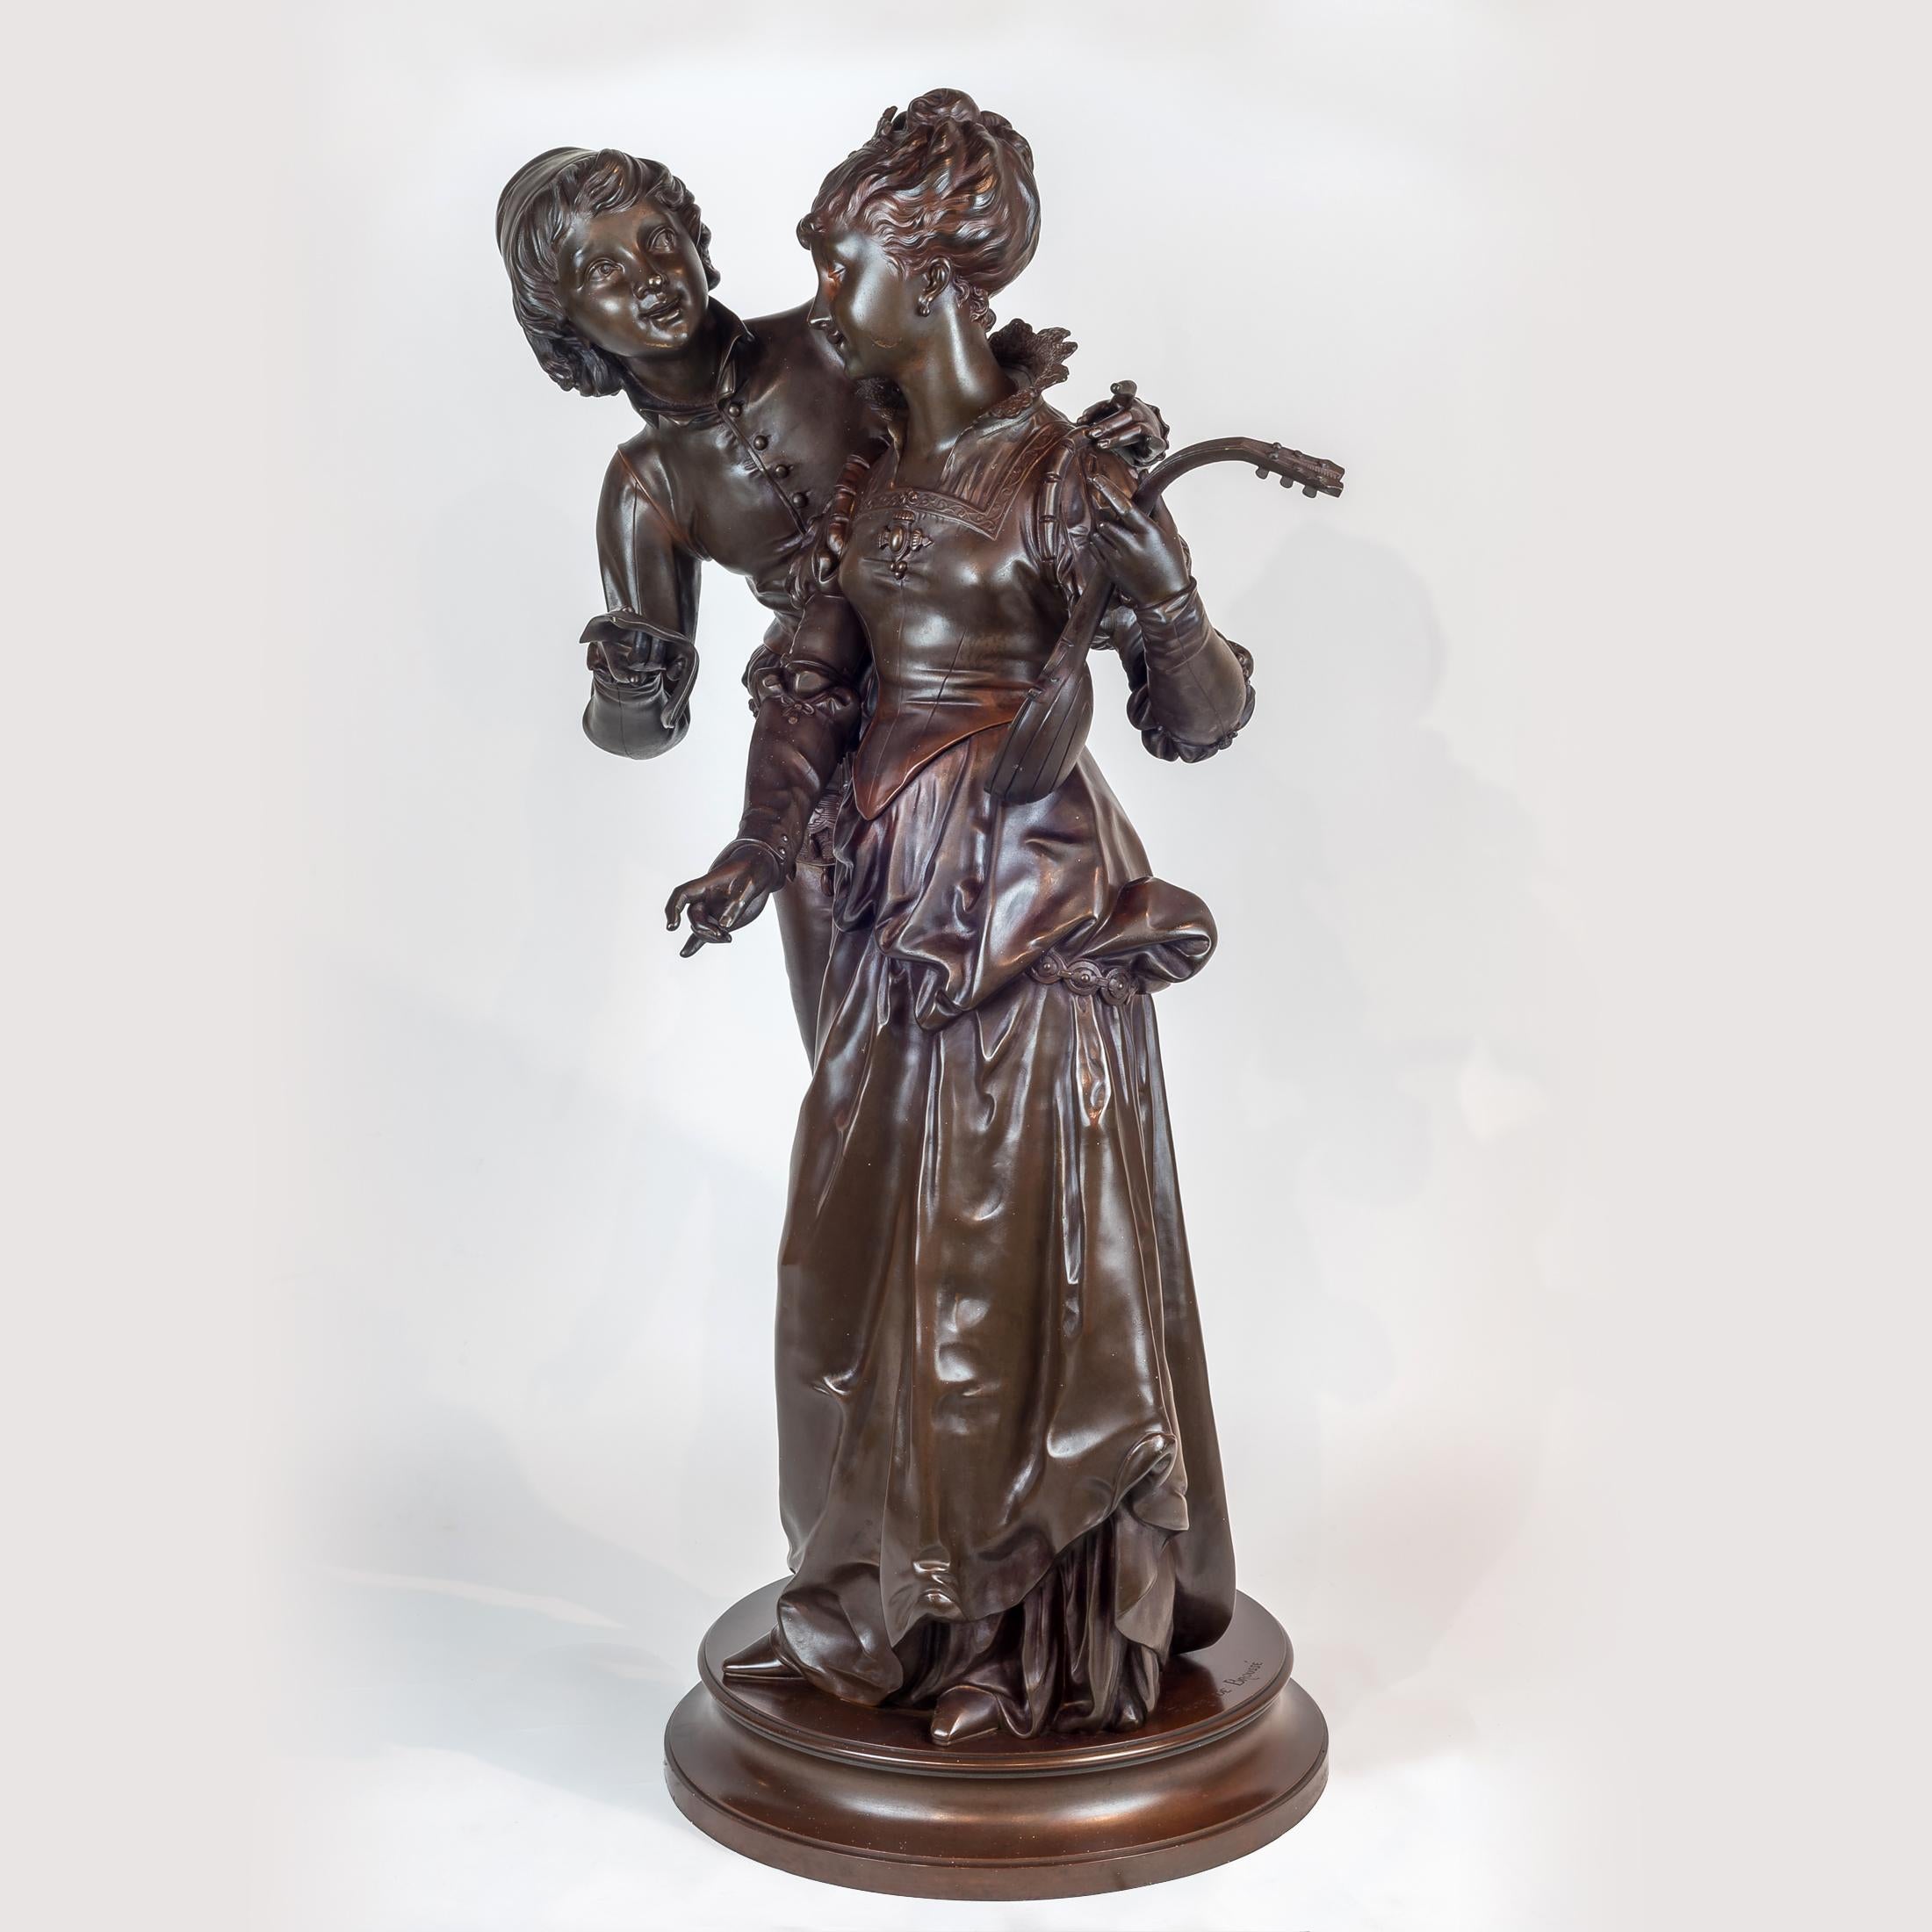 Patinierte Bronzeskulptur zweier Liebender aus dem 19. Jahrhundert von Vincent Faure de Brousse
Die Frau hält eine Mandoline am linken Arm. Bezeichnet 'Faure de Brousse'. 

Künstler: Vincent Desire Faure de Brousse (1876 - 1908) 
Herkunft: